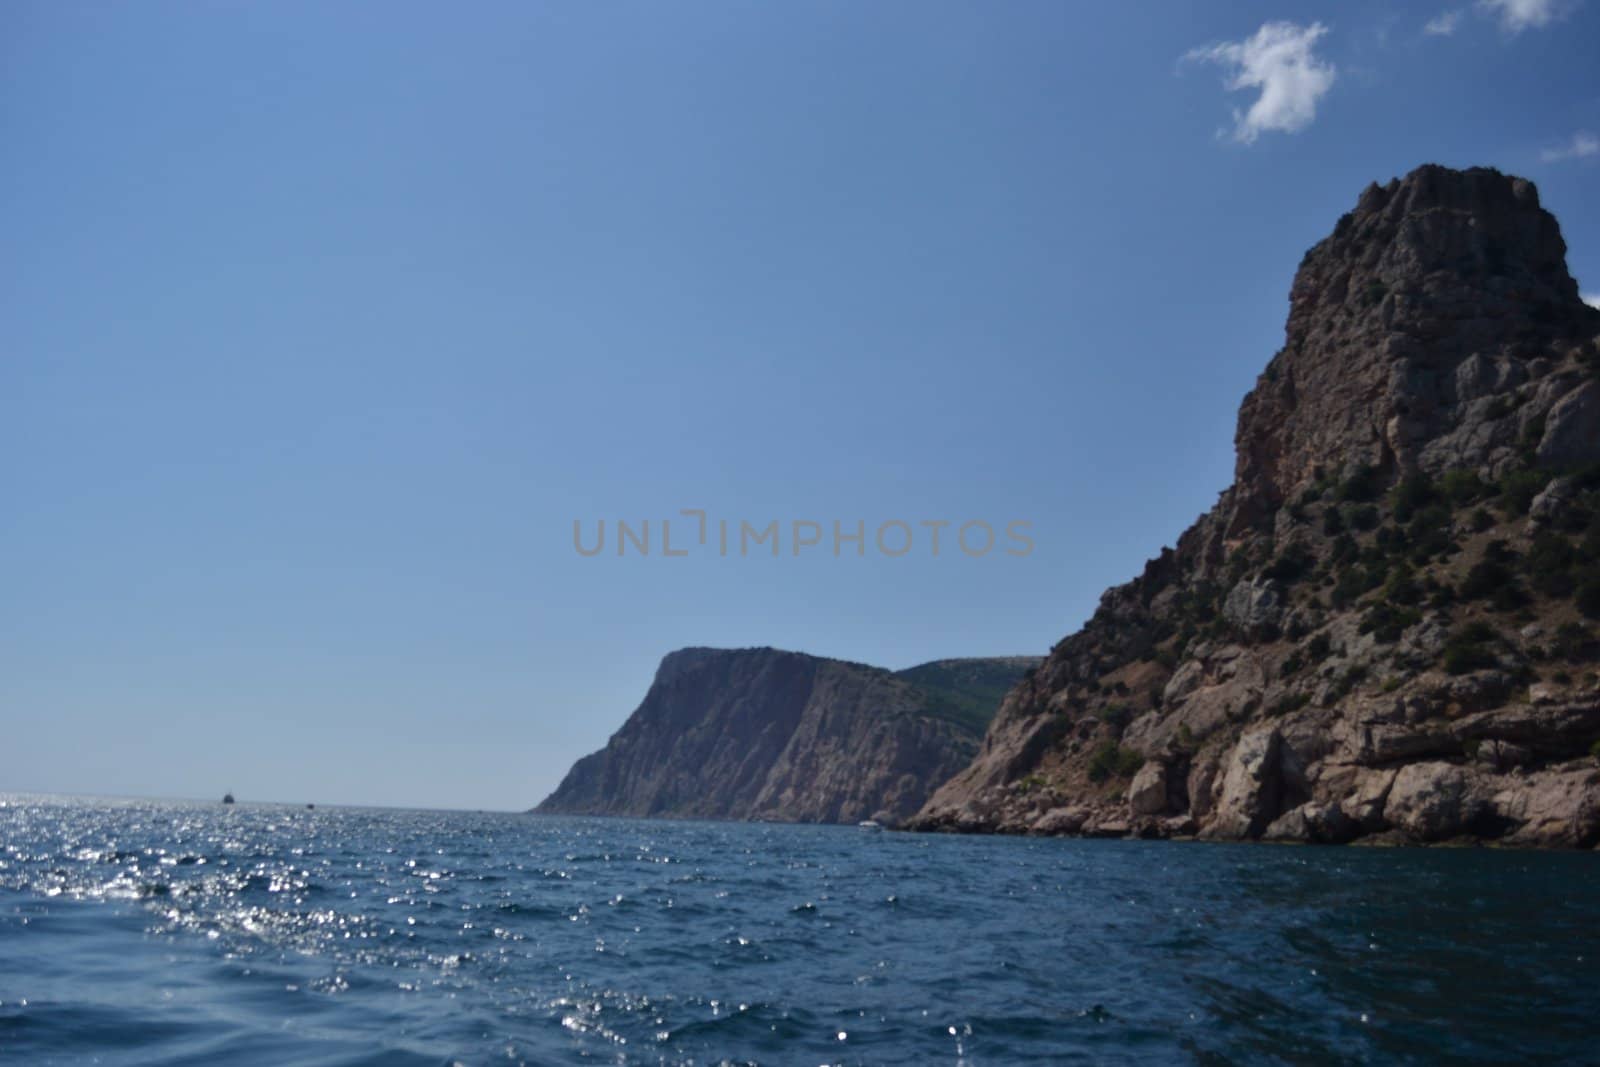 The Black sea landscape by Autre